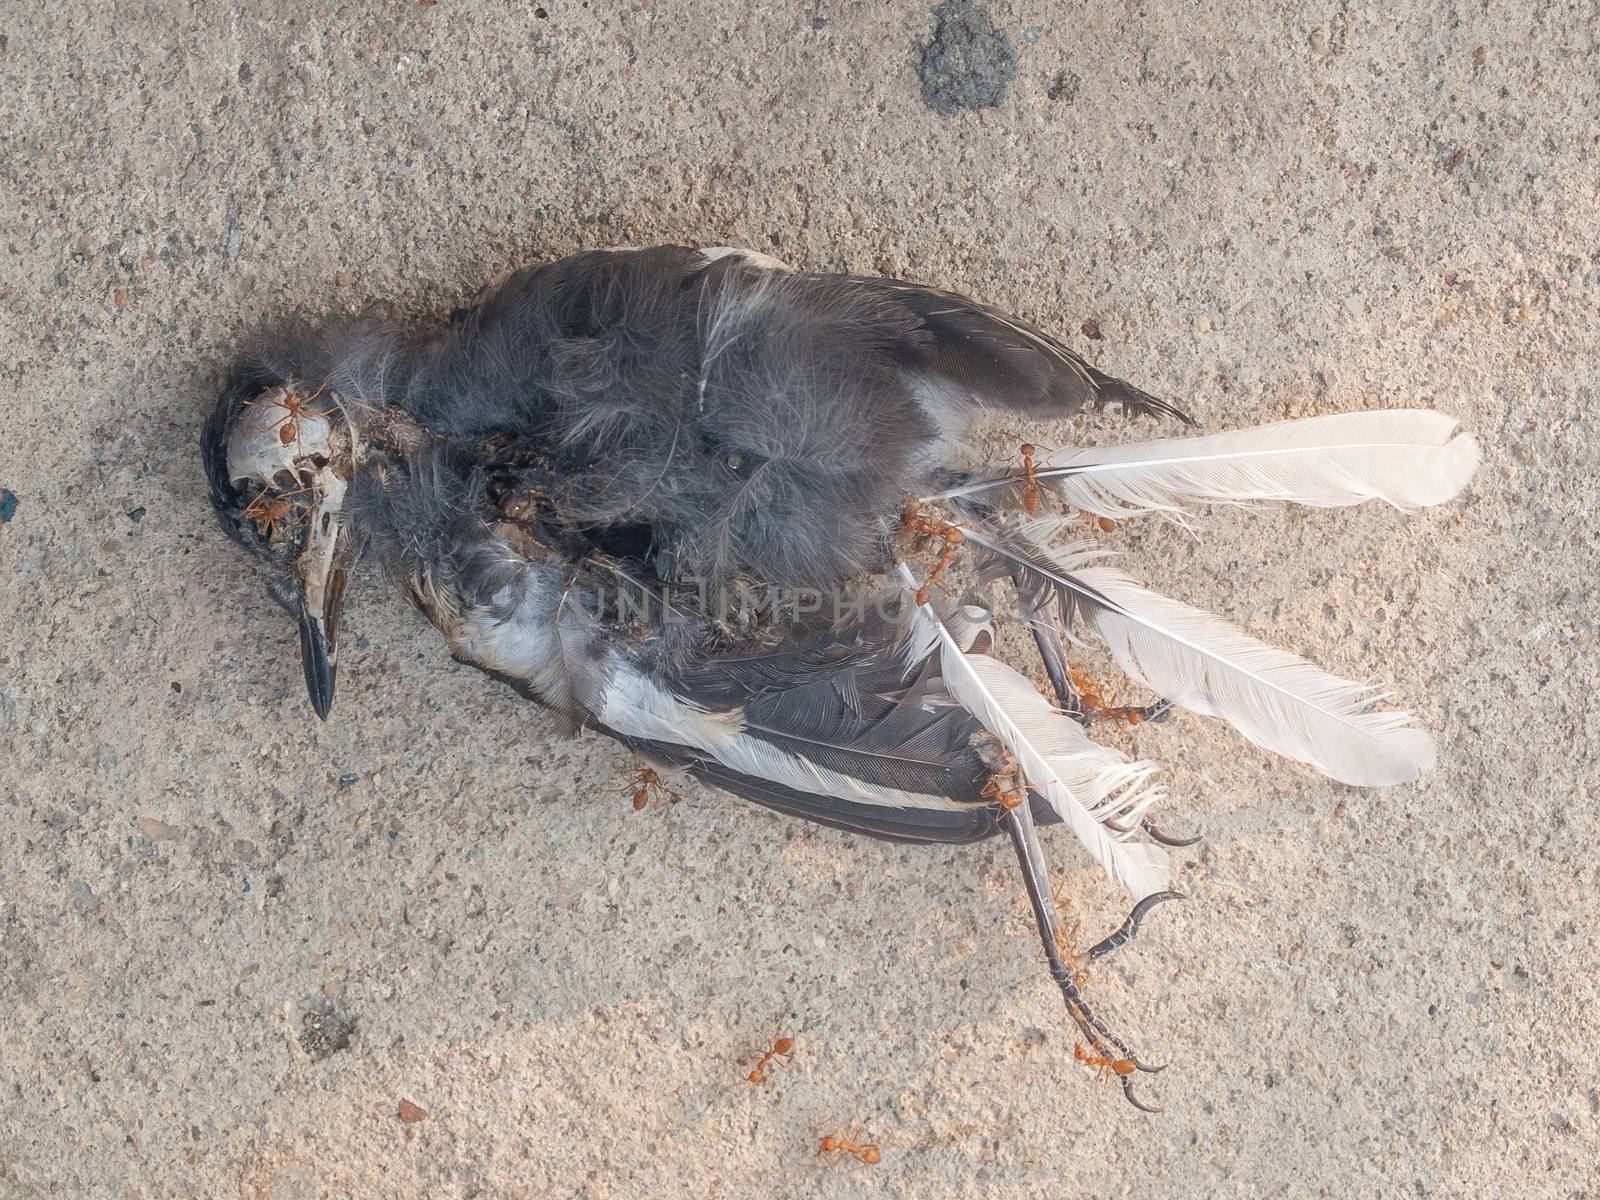 A mummified bird corpse on cement floor.